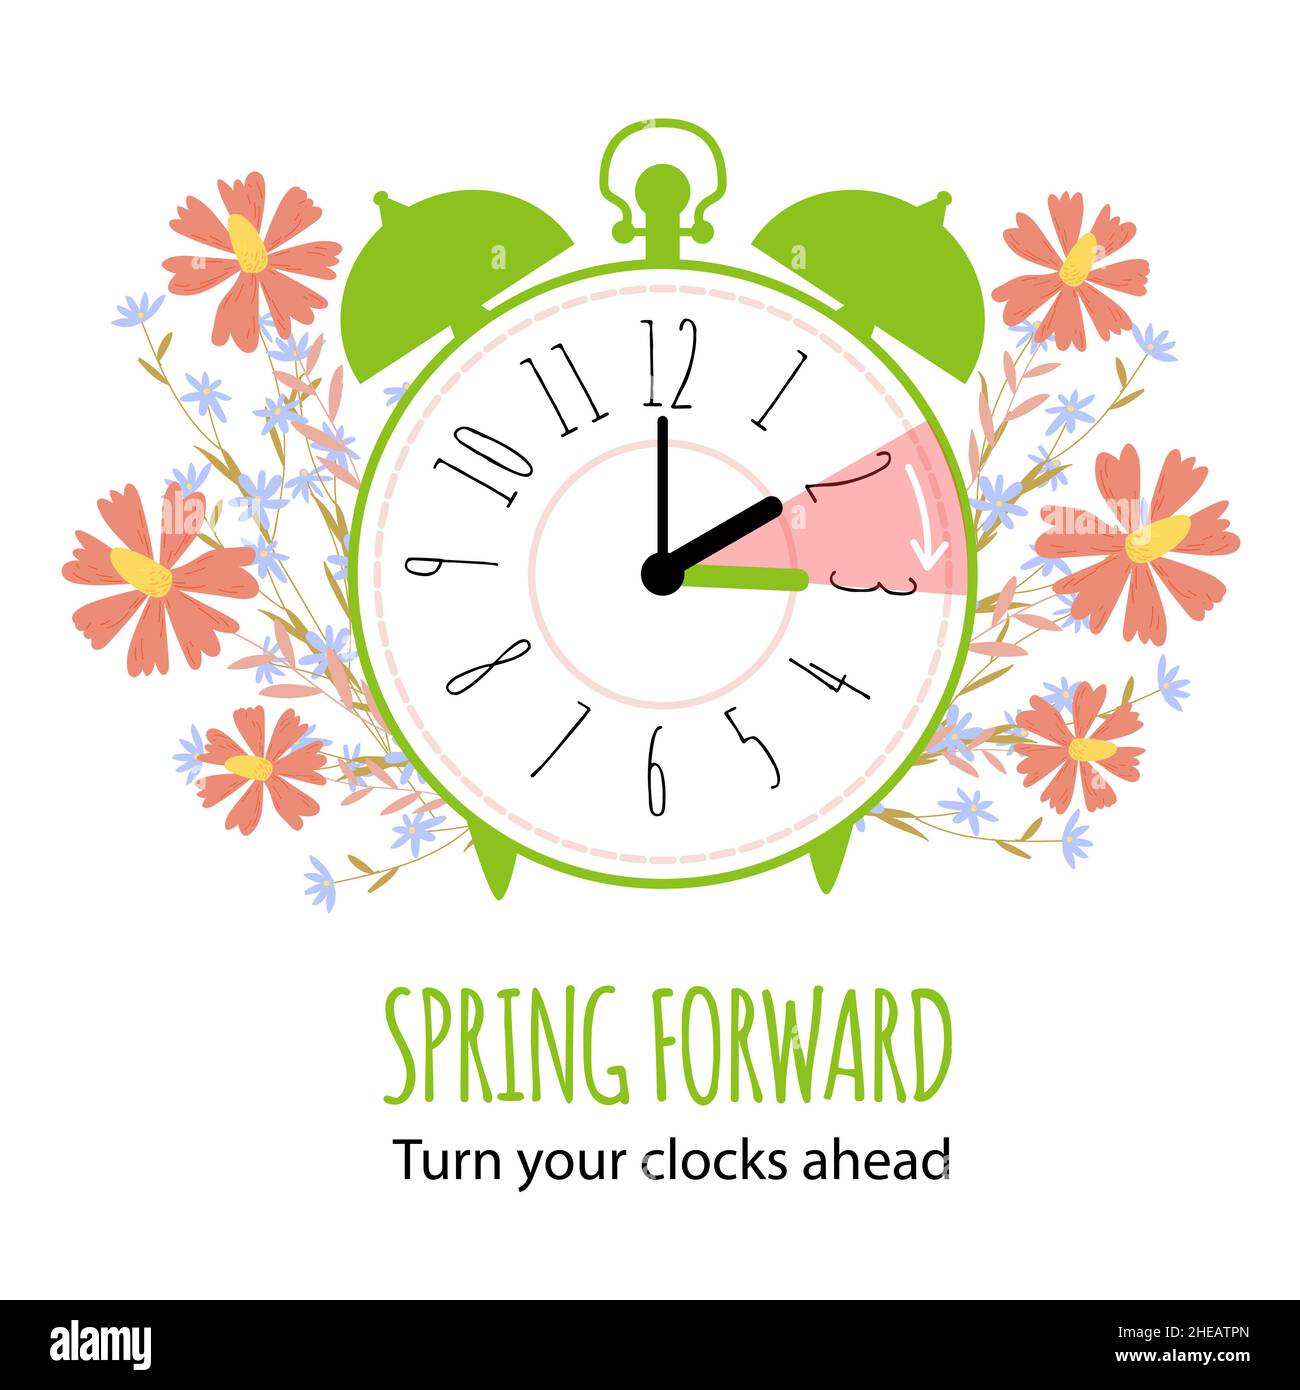 Die Sommerzeit beginnt. Spring Forward Konzept mit grafischem Wecker und Zeitplan, um Ihre Uhren im Frühjahr eine Stunde nach vorne zu stellen. Vektor-il Stock Vektor